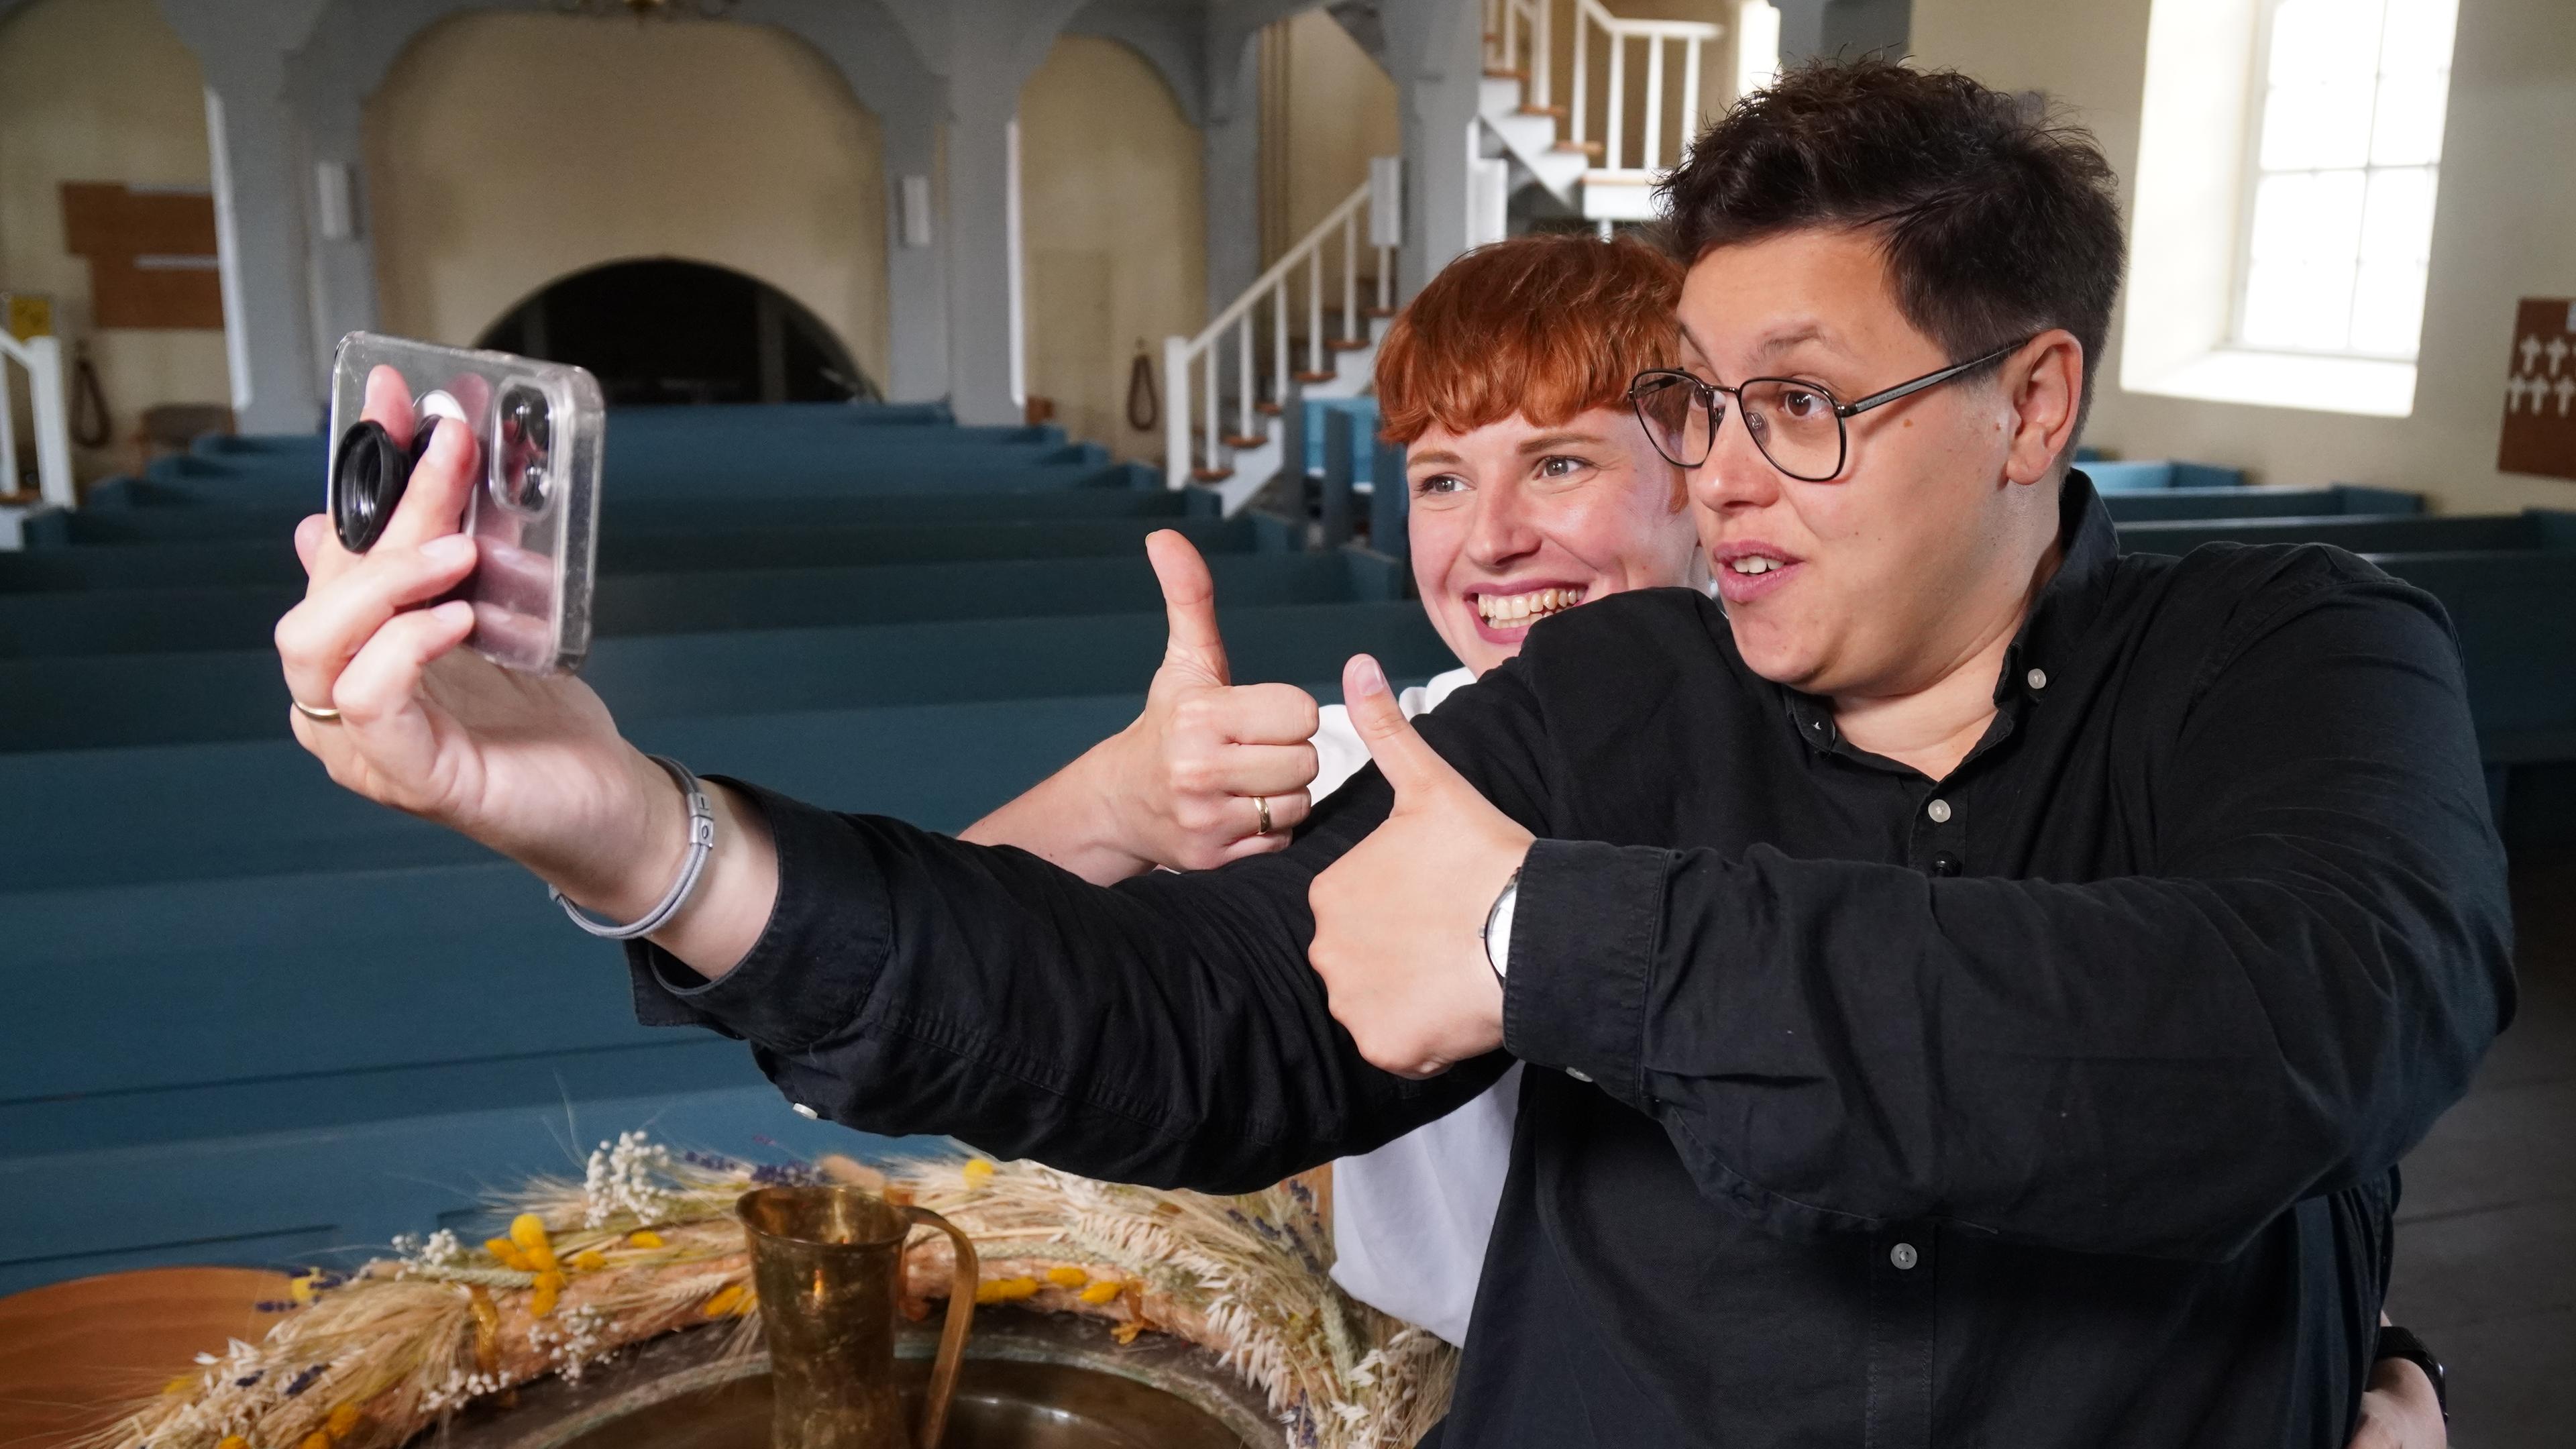 Ellen und Steffi Radtke posieren für ein Handy-Selfie in der Kirche.